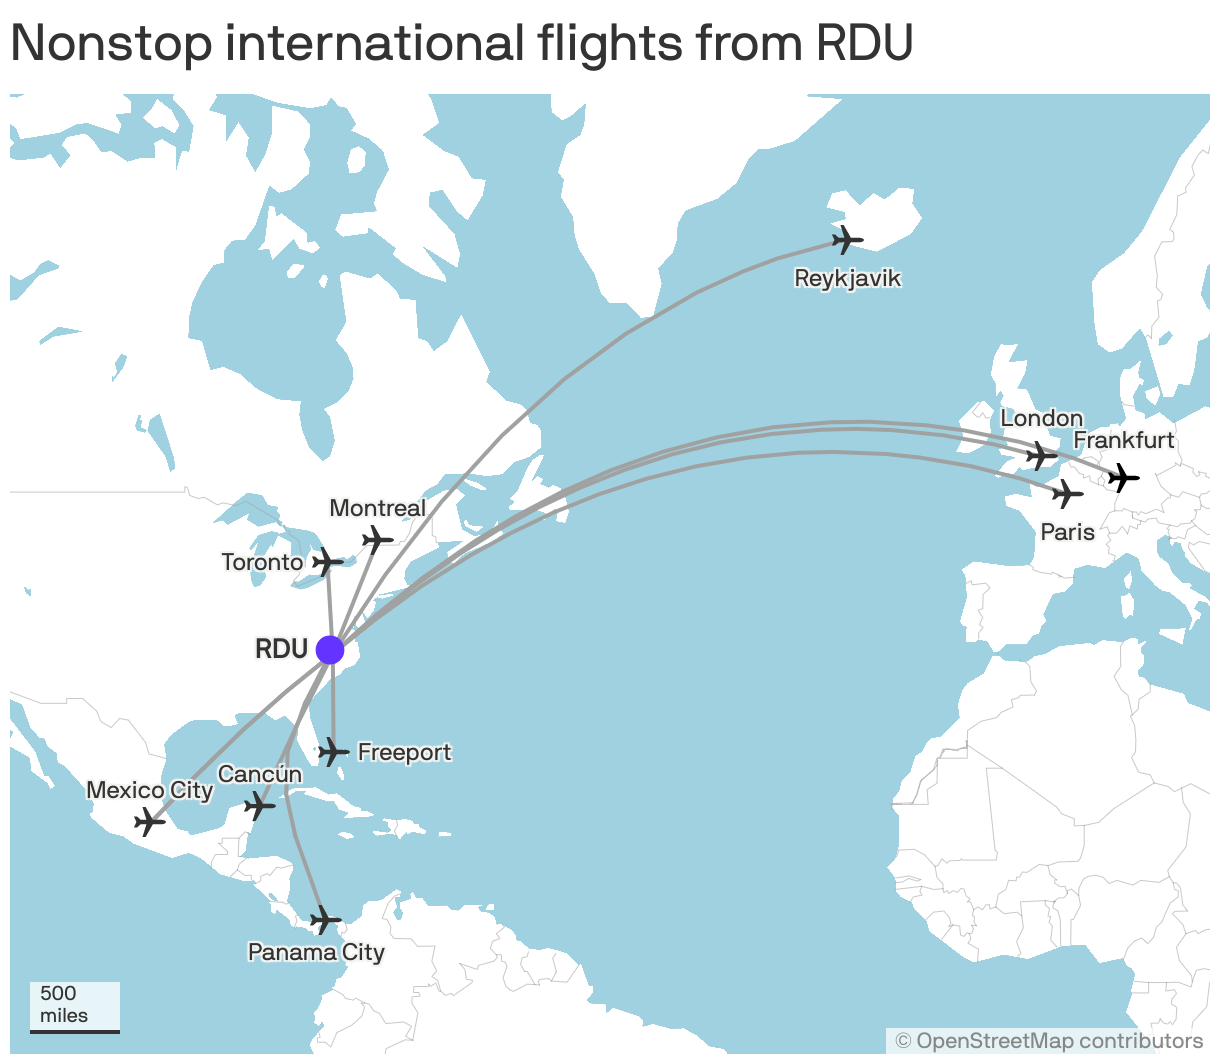 Nonstop international flights from RDU